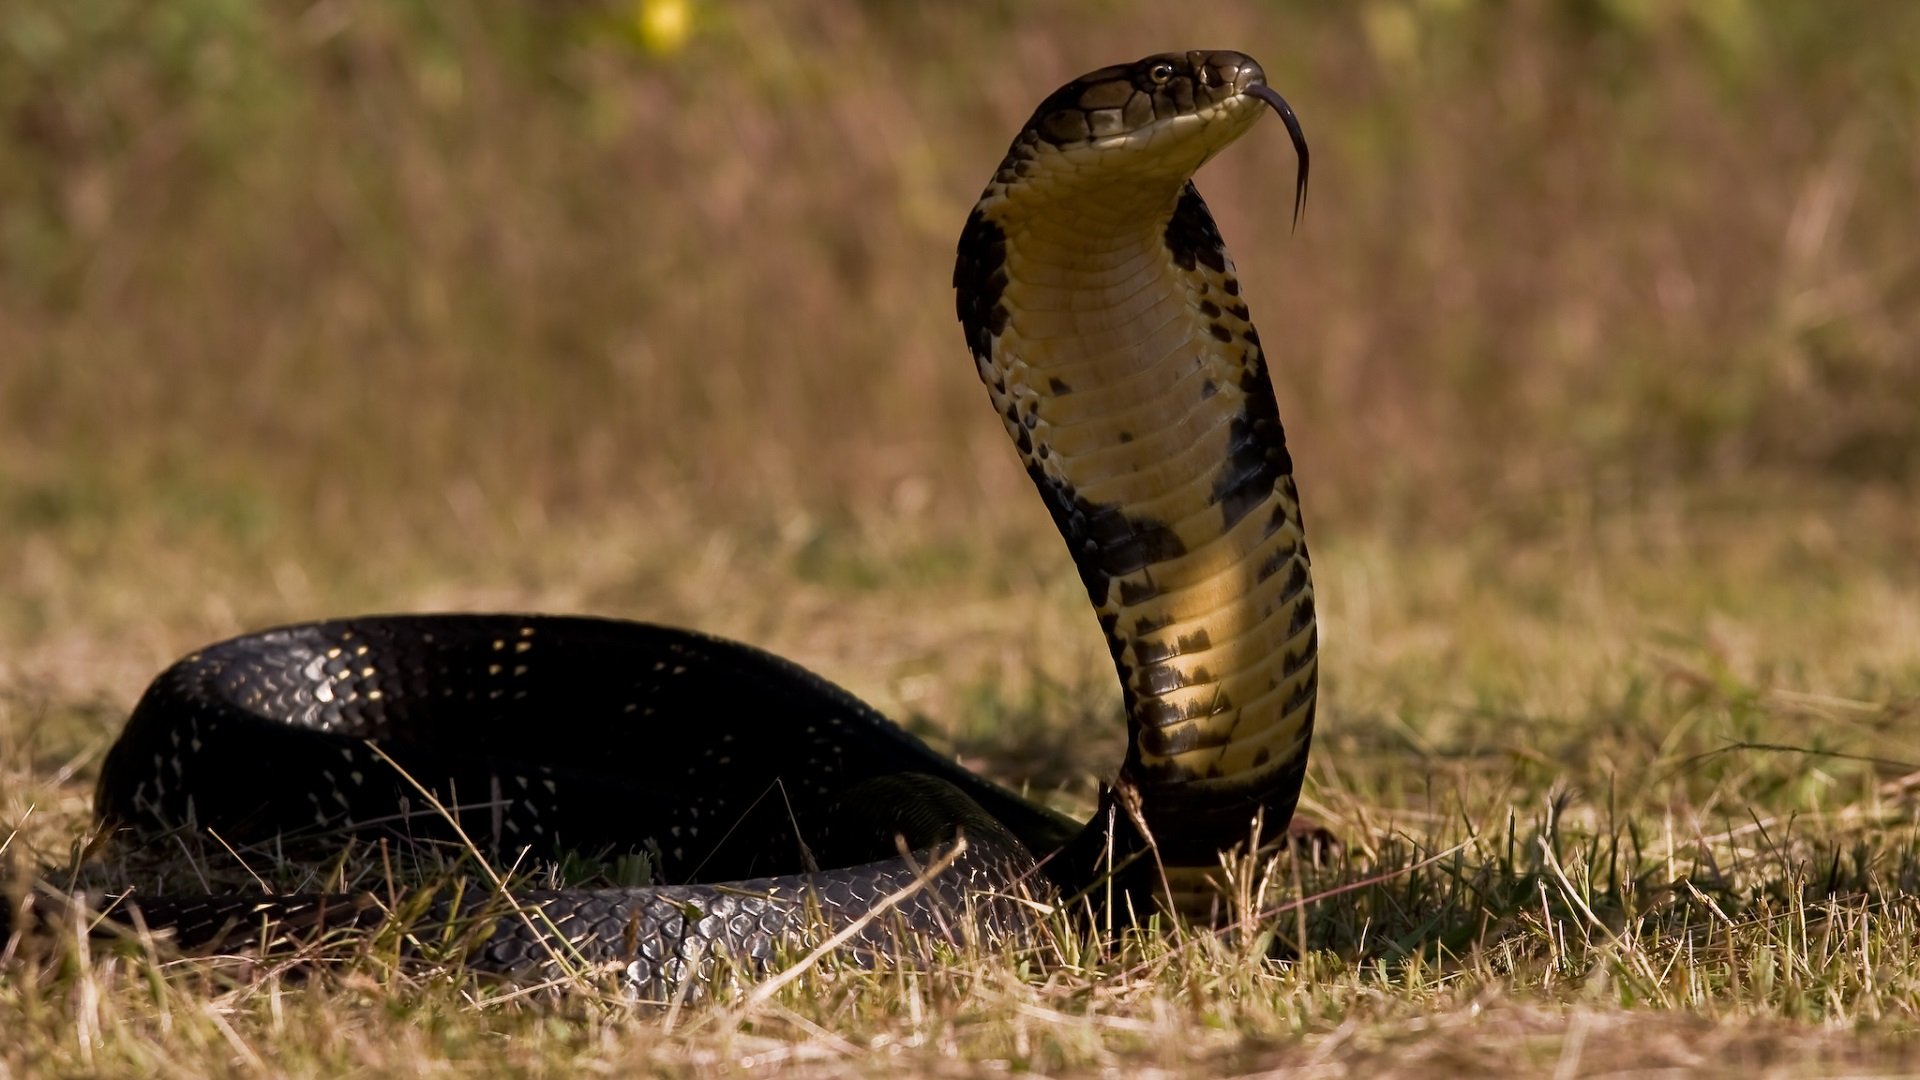 King Cobra Snake Wallpaper